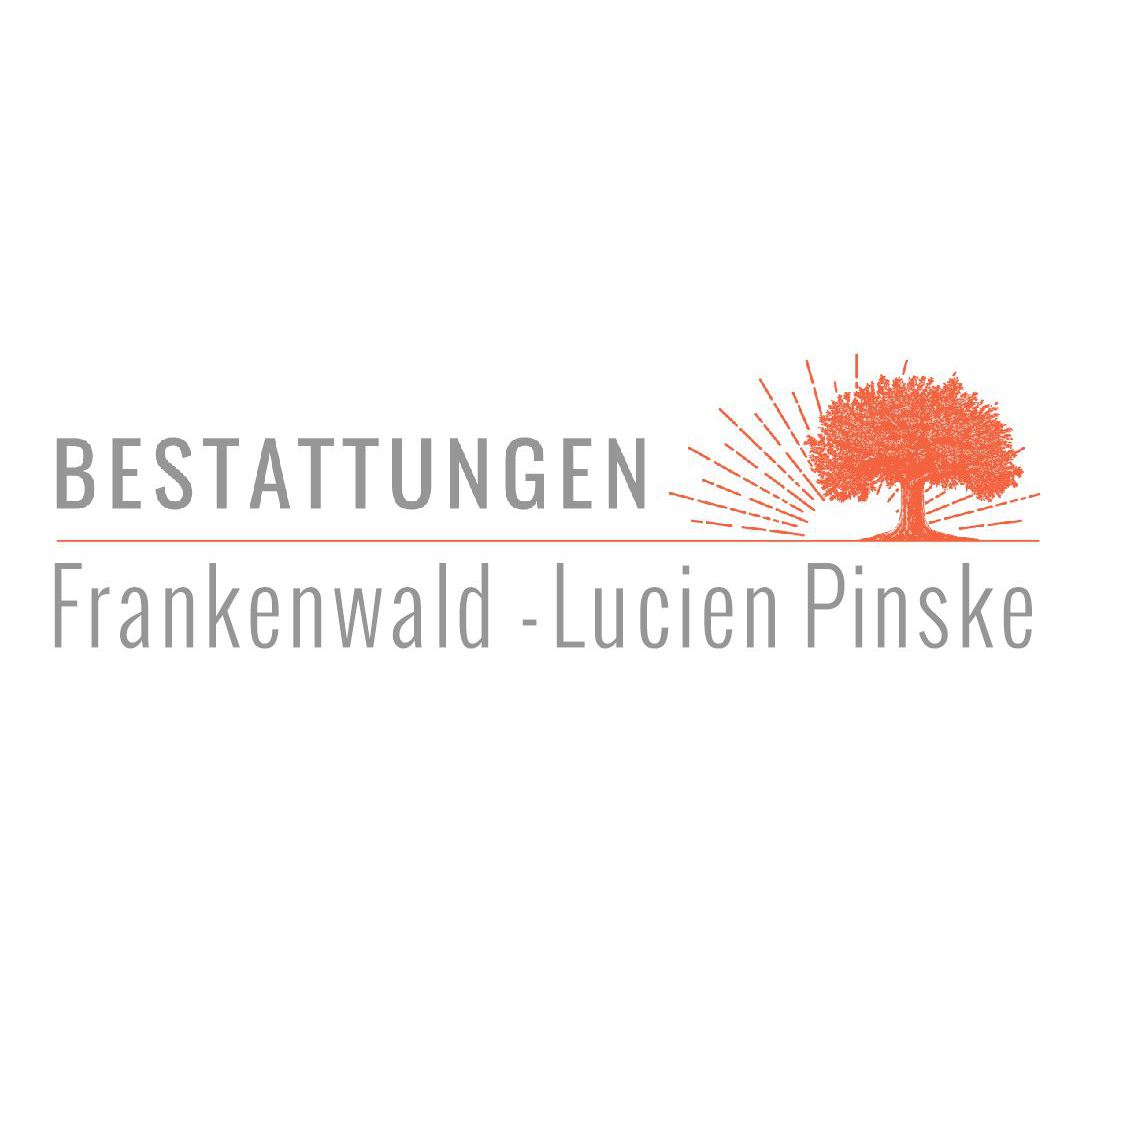 Pinske Lucien Bestattungen Frankenwald in Bad Lobenstein - Logo